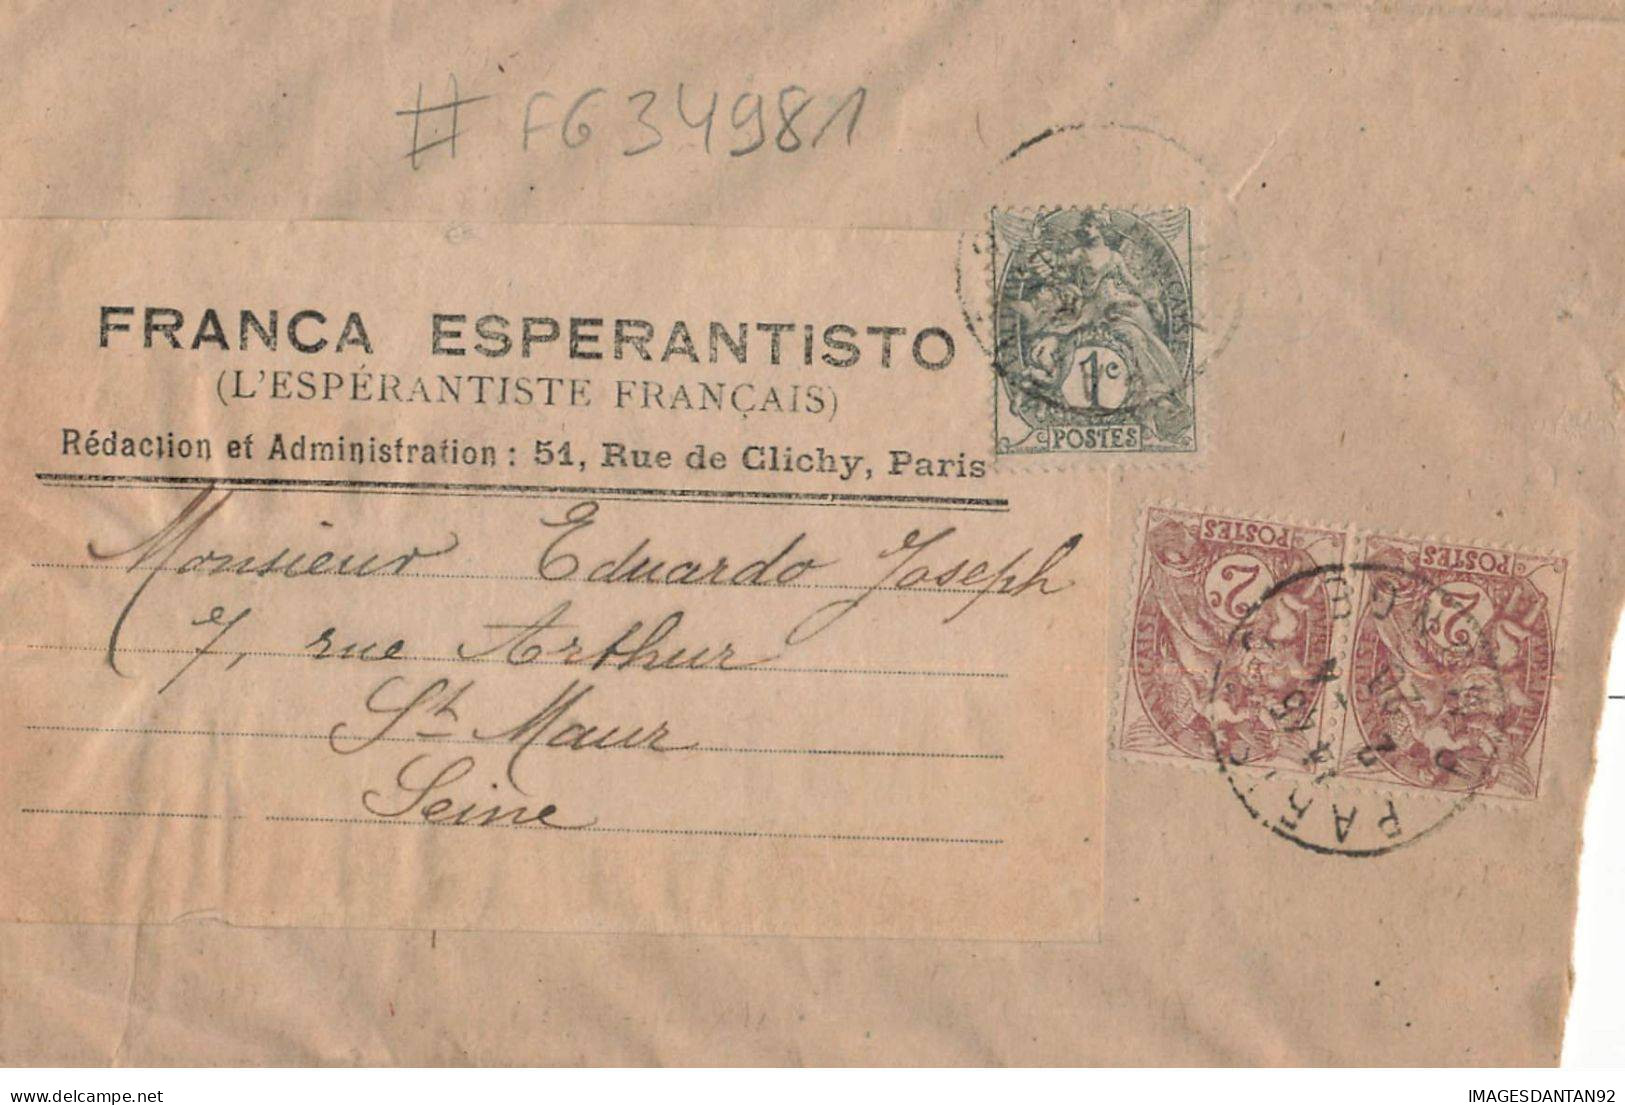 FRANCA ESPERANTISTO #FG34981 ESPERANTO ESPERANTISTE FRANCAIS PARIS RUE CLICHE BANDE JOURNAUX 1920 - Esperanto